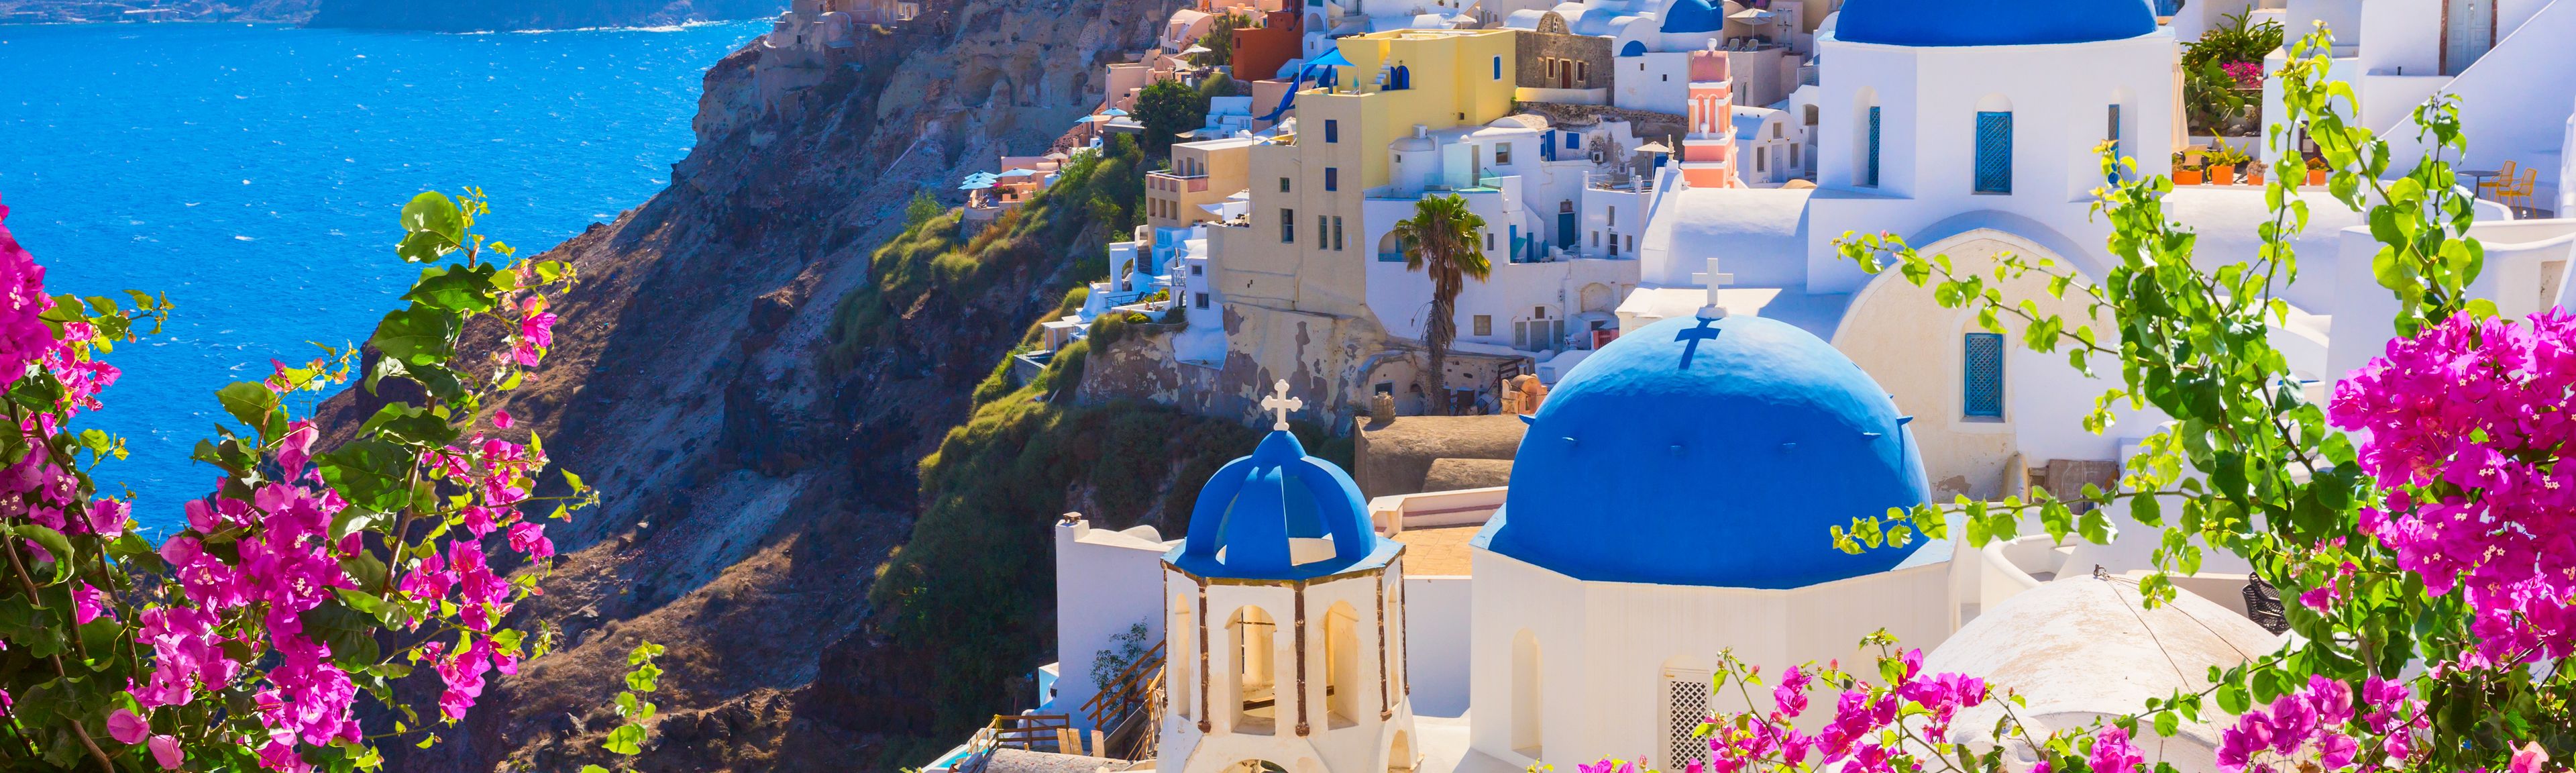 Weiße Häuser mit blauen Dächern und dem Meer im Hintergrund zeigen das typische Griechenland